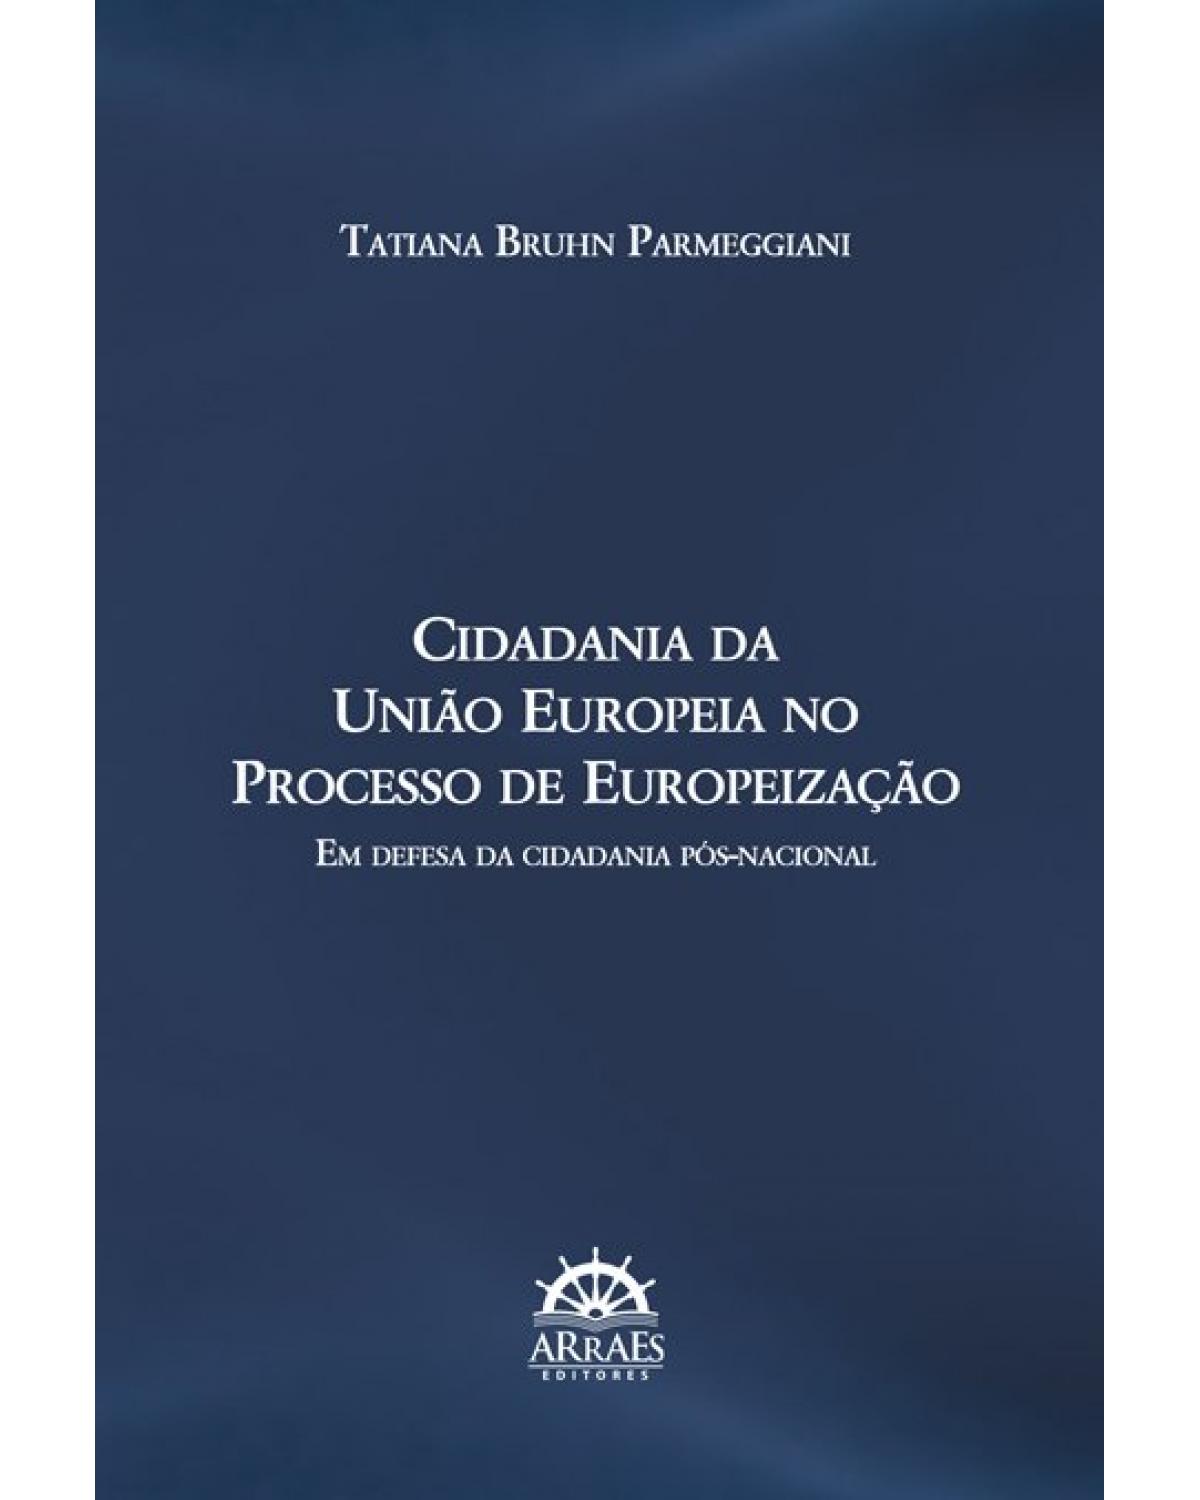 Cidadania da União Europeia no processo de europeização - em defesa da cidadania pós-nacional - 1ª Edição | 2020